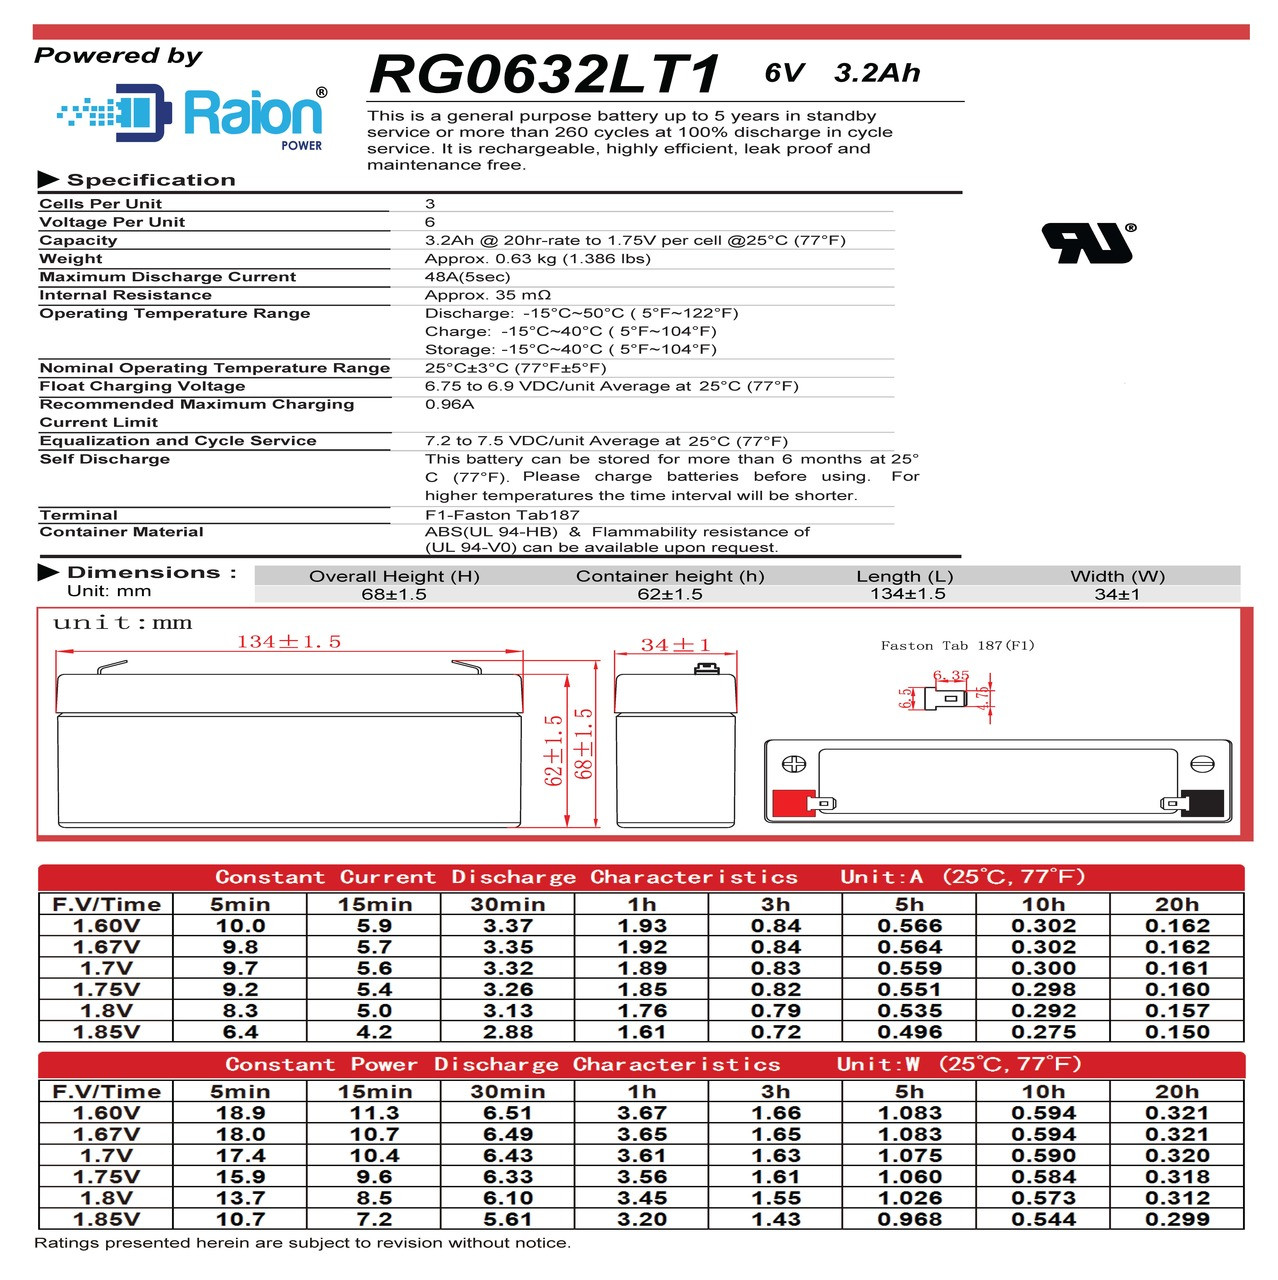 Raion Power RG0632LT1 6V 3.2Ah Battery Data Sheet for NERBO NB 3.2-6